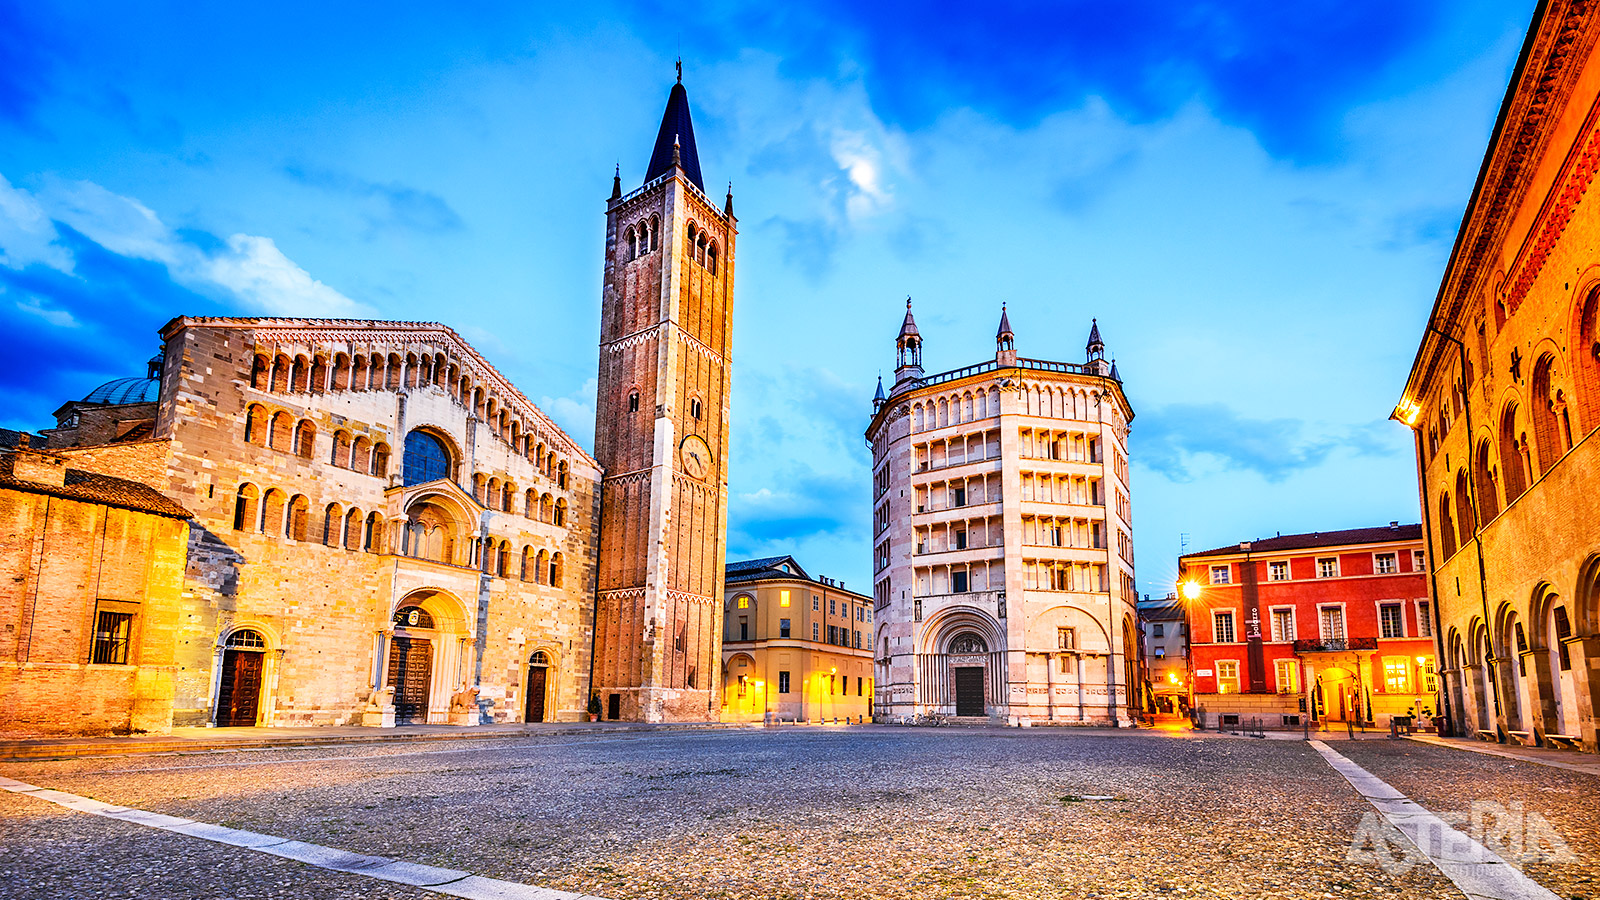 Parma, symbool van lekker eten, heeft een schat aan mooie gebouwen, schilderijen en beeldhouwkunst